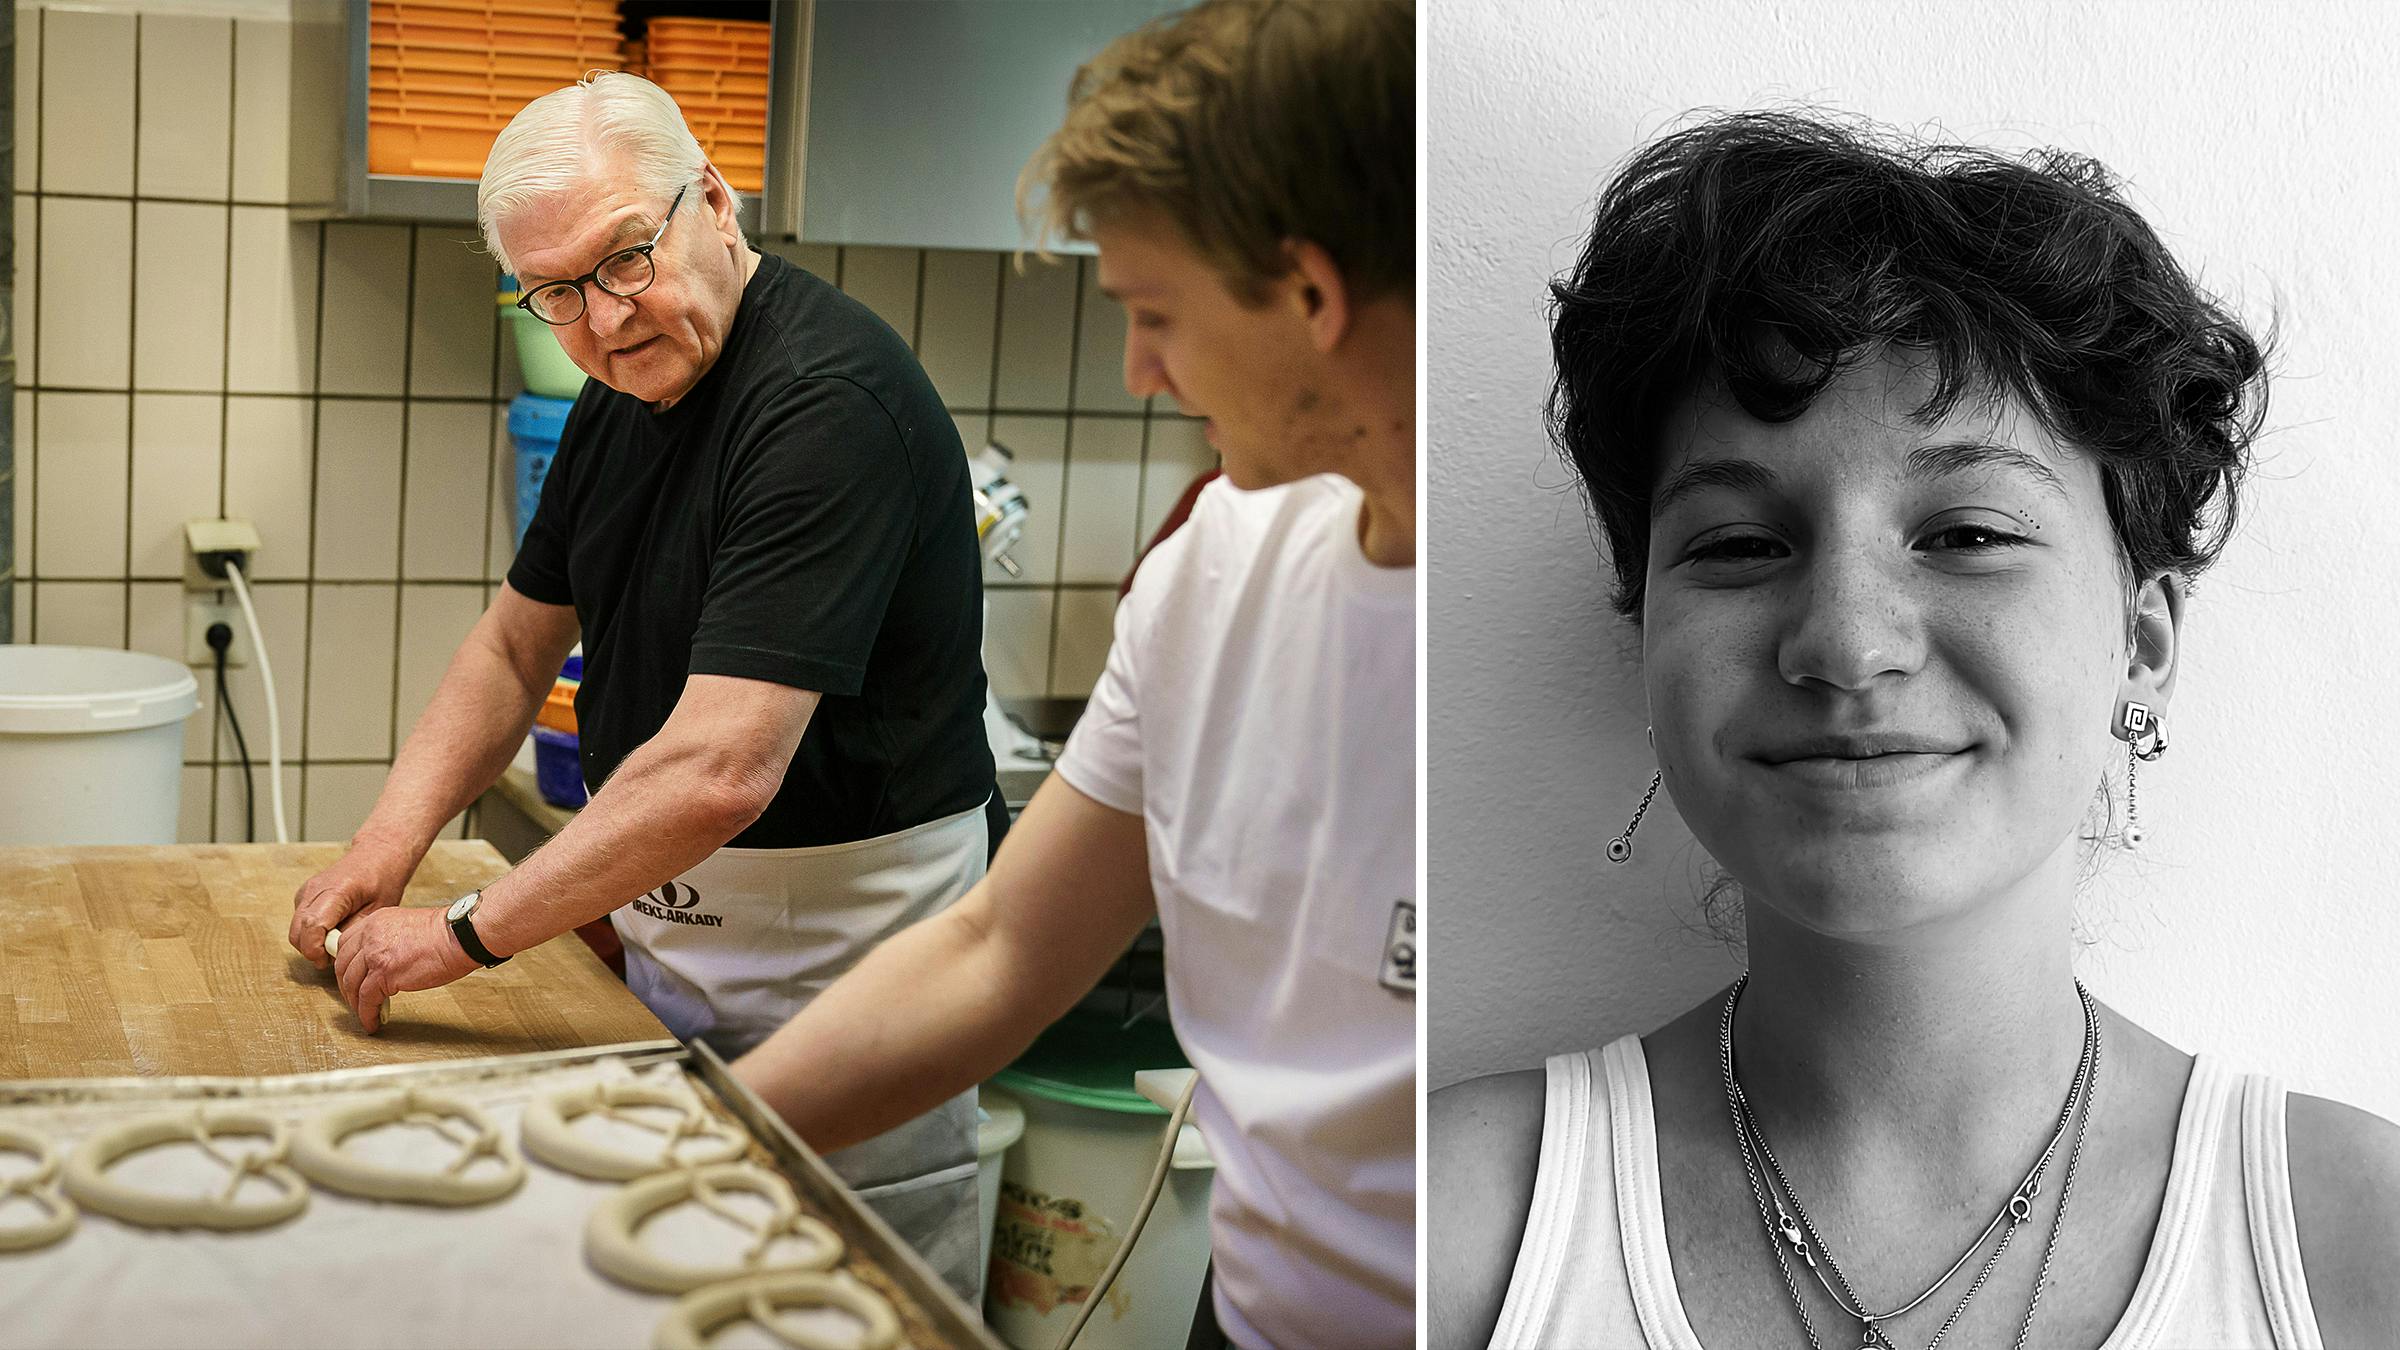 Linkes Bild: Bundespräsident Frank-Walter Steinmeier knetet zusammen mit einem Jugendlichen Teig in einer Bäckerei, rechtes Bild: die Autorin Sophia Muliar